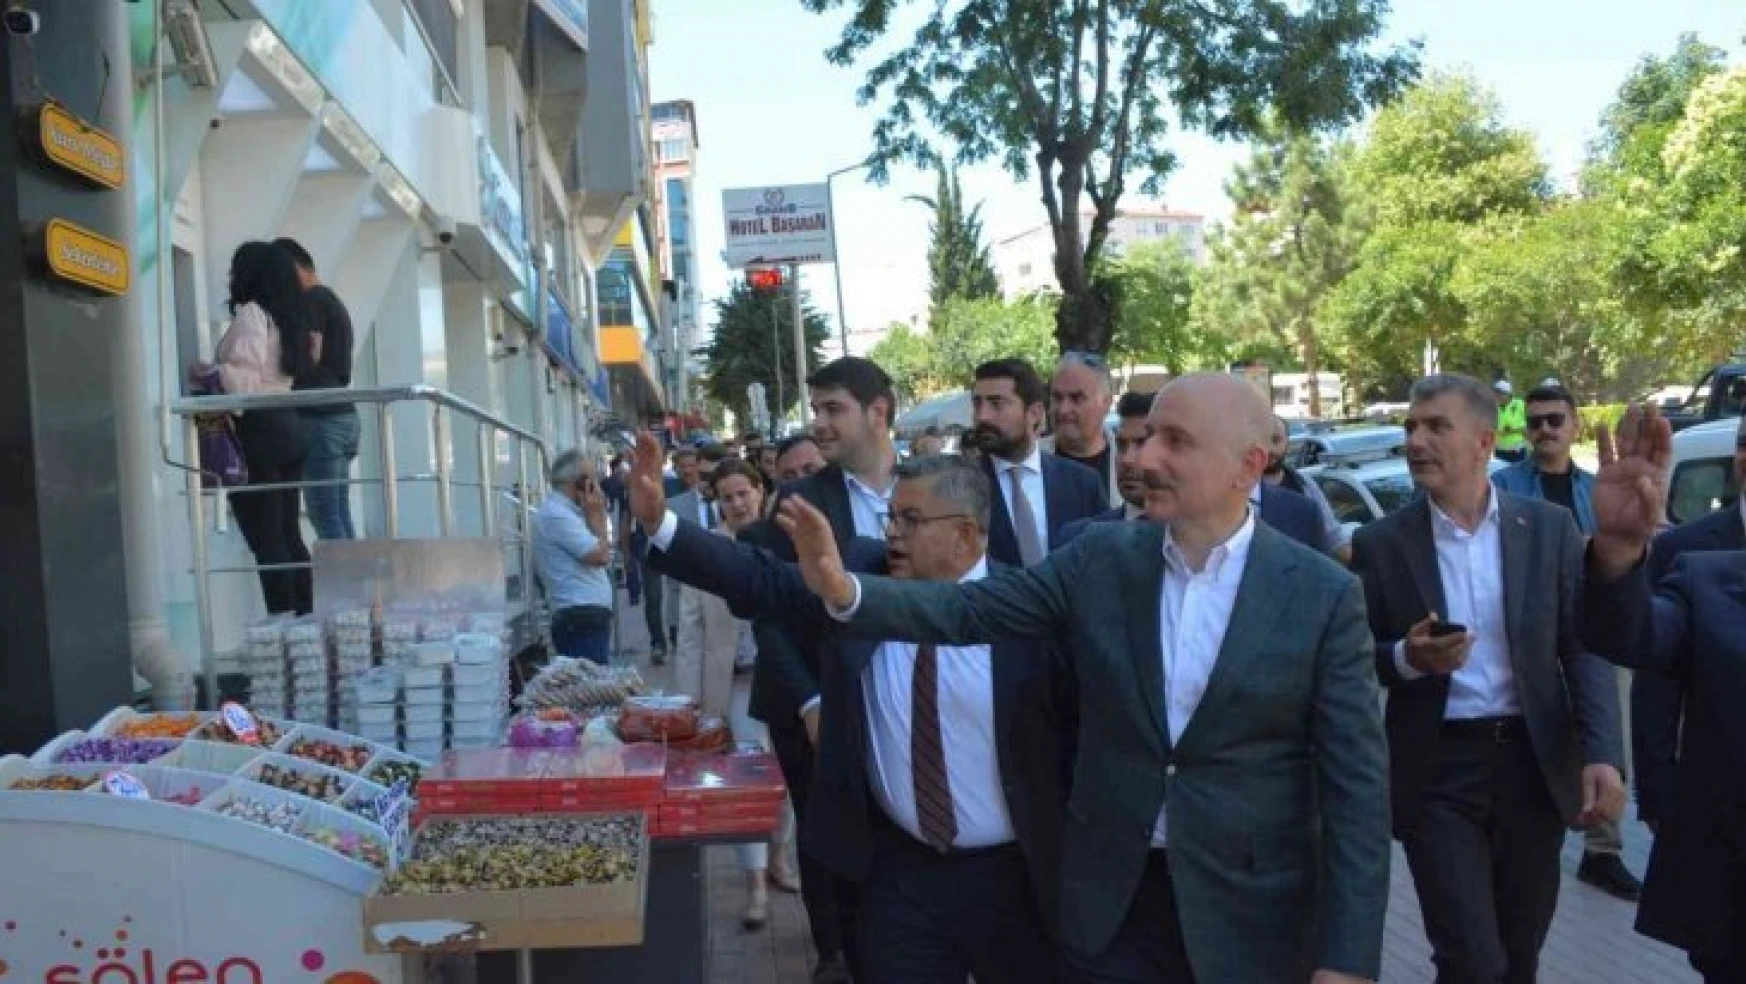 Ulaştırma ve Altyapı Bakanı Adil Karaismailoğlu, Bilecik'te esnaf ziyareti yaptı